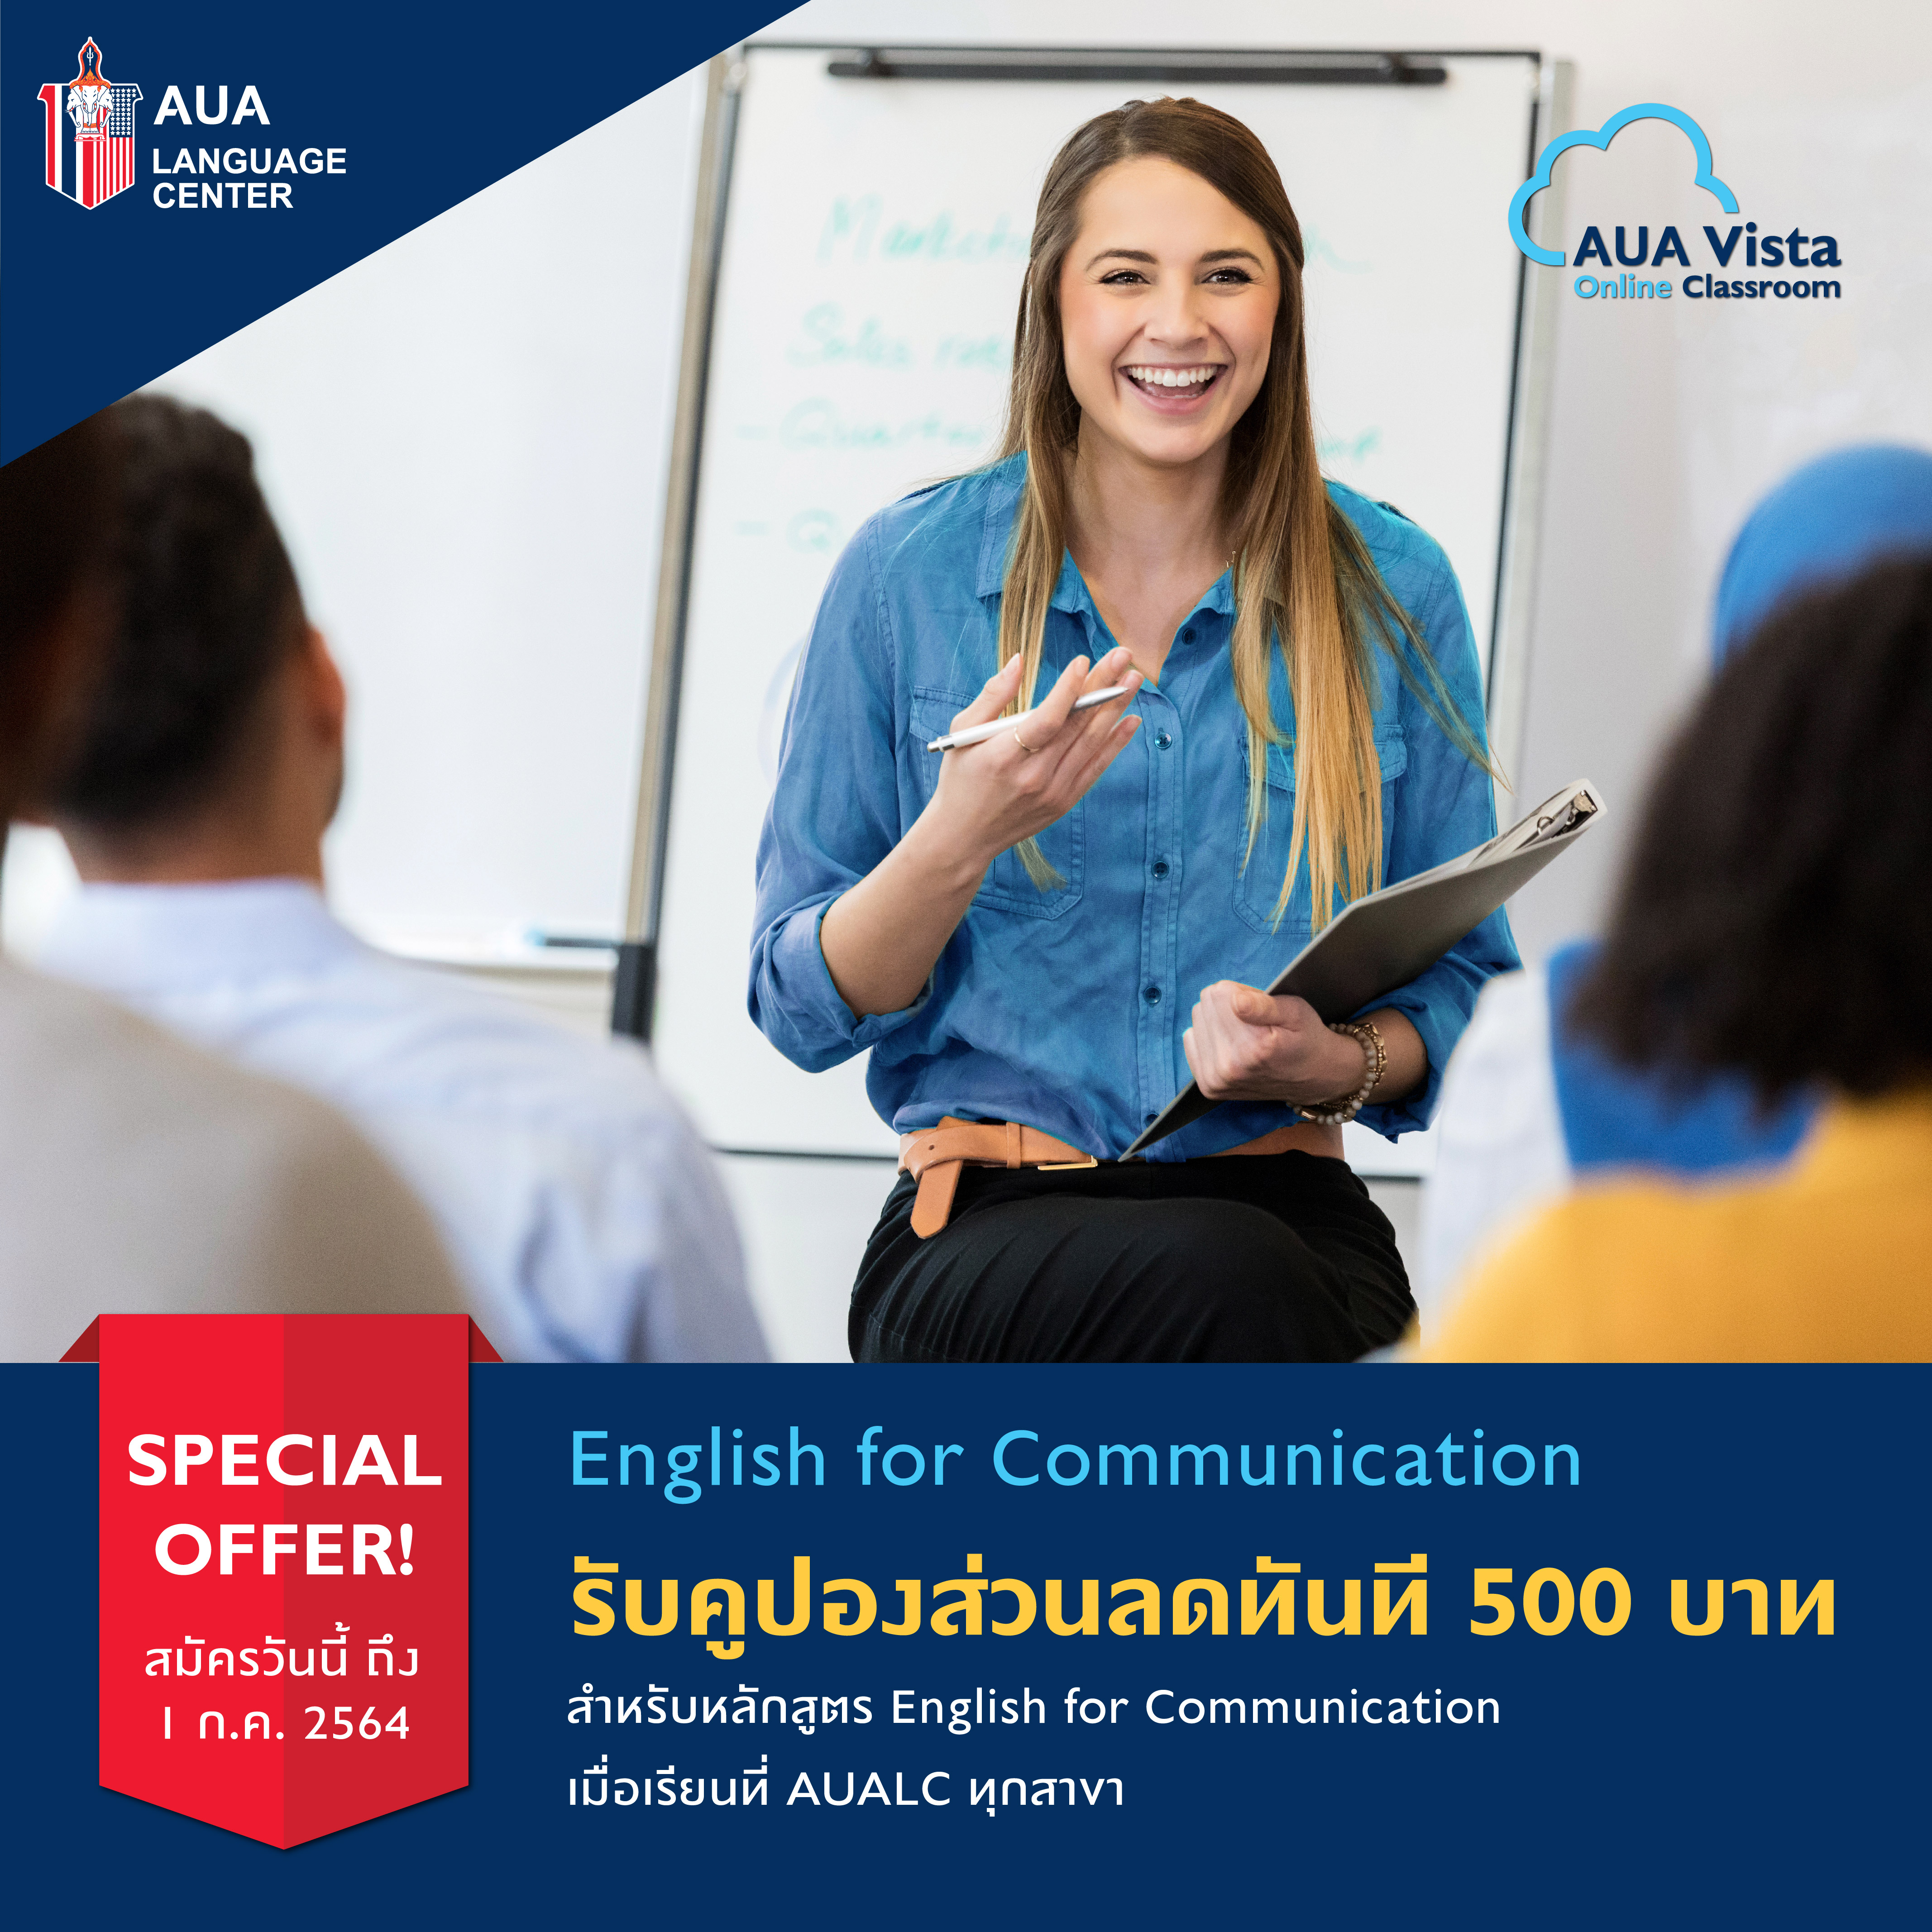 รับคูปองส่วนลดทันที 500 บาท เมื่อลงทะเบียนเรียนหลักสูตร AUA Vista Online Classroom : English for Communication ภายในวันที่ 1 กรกฎาคม 2564นี้ เท่านั้น